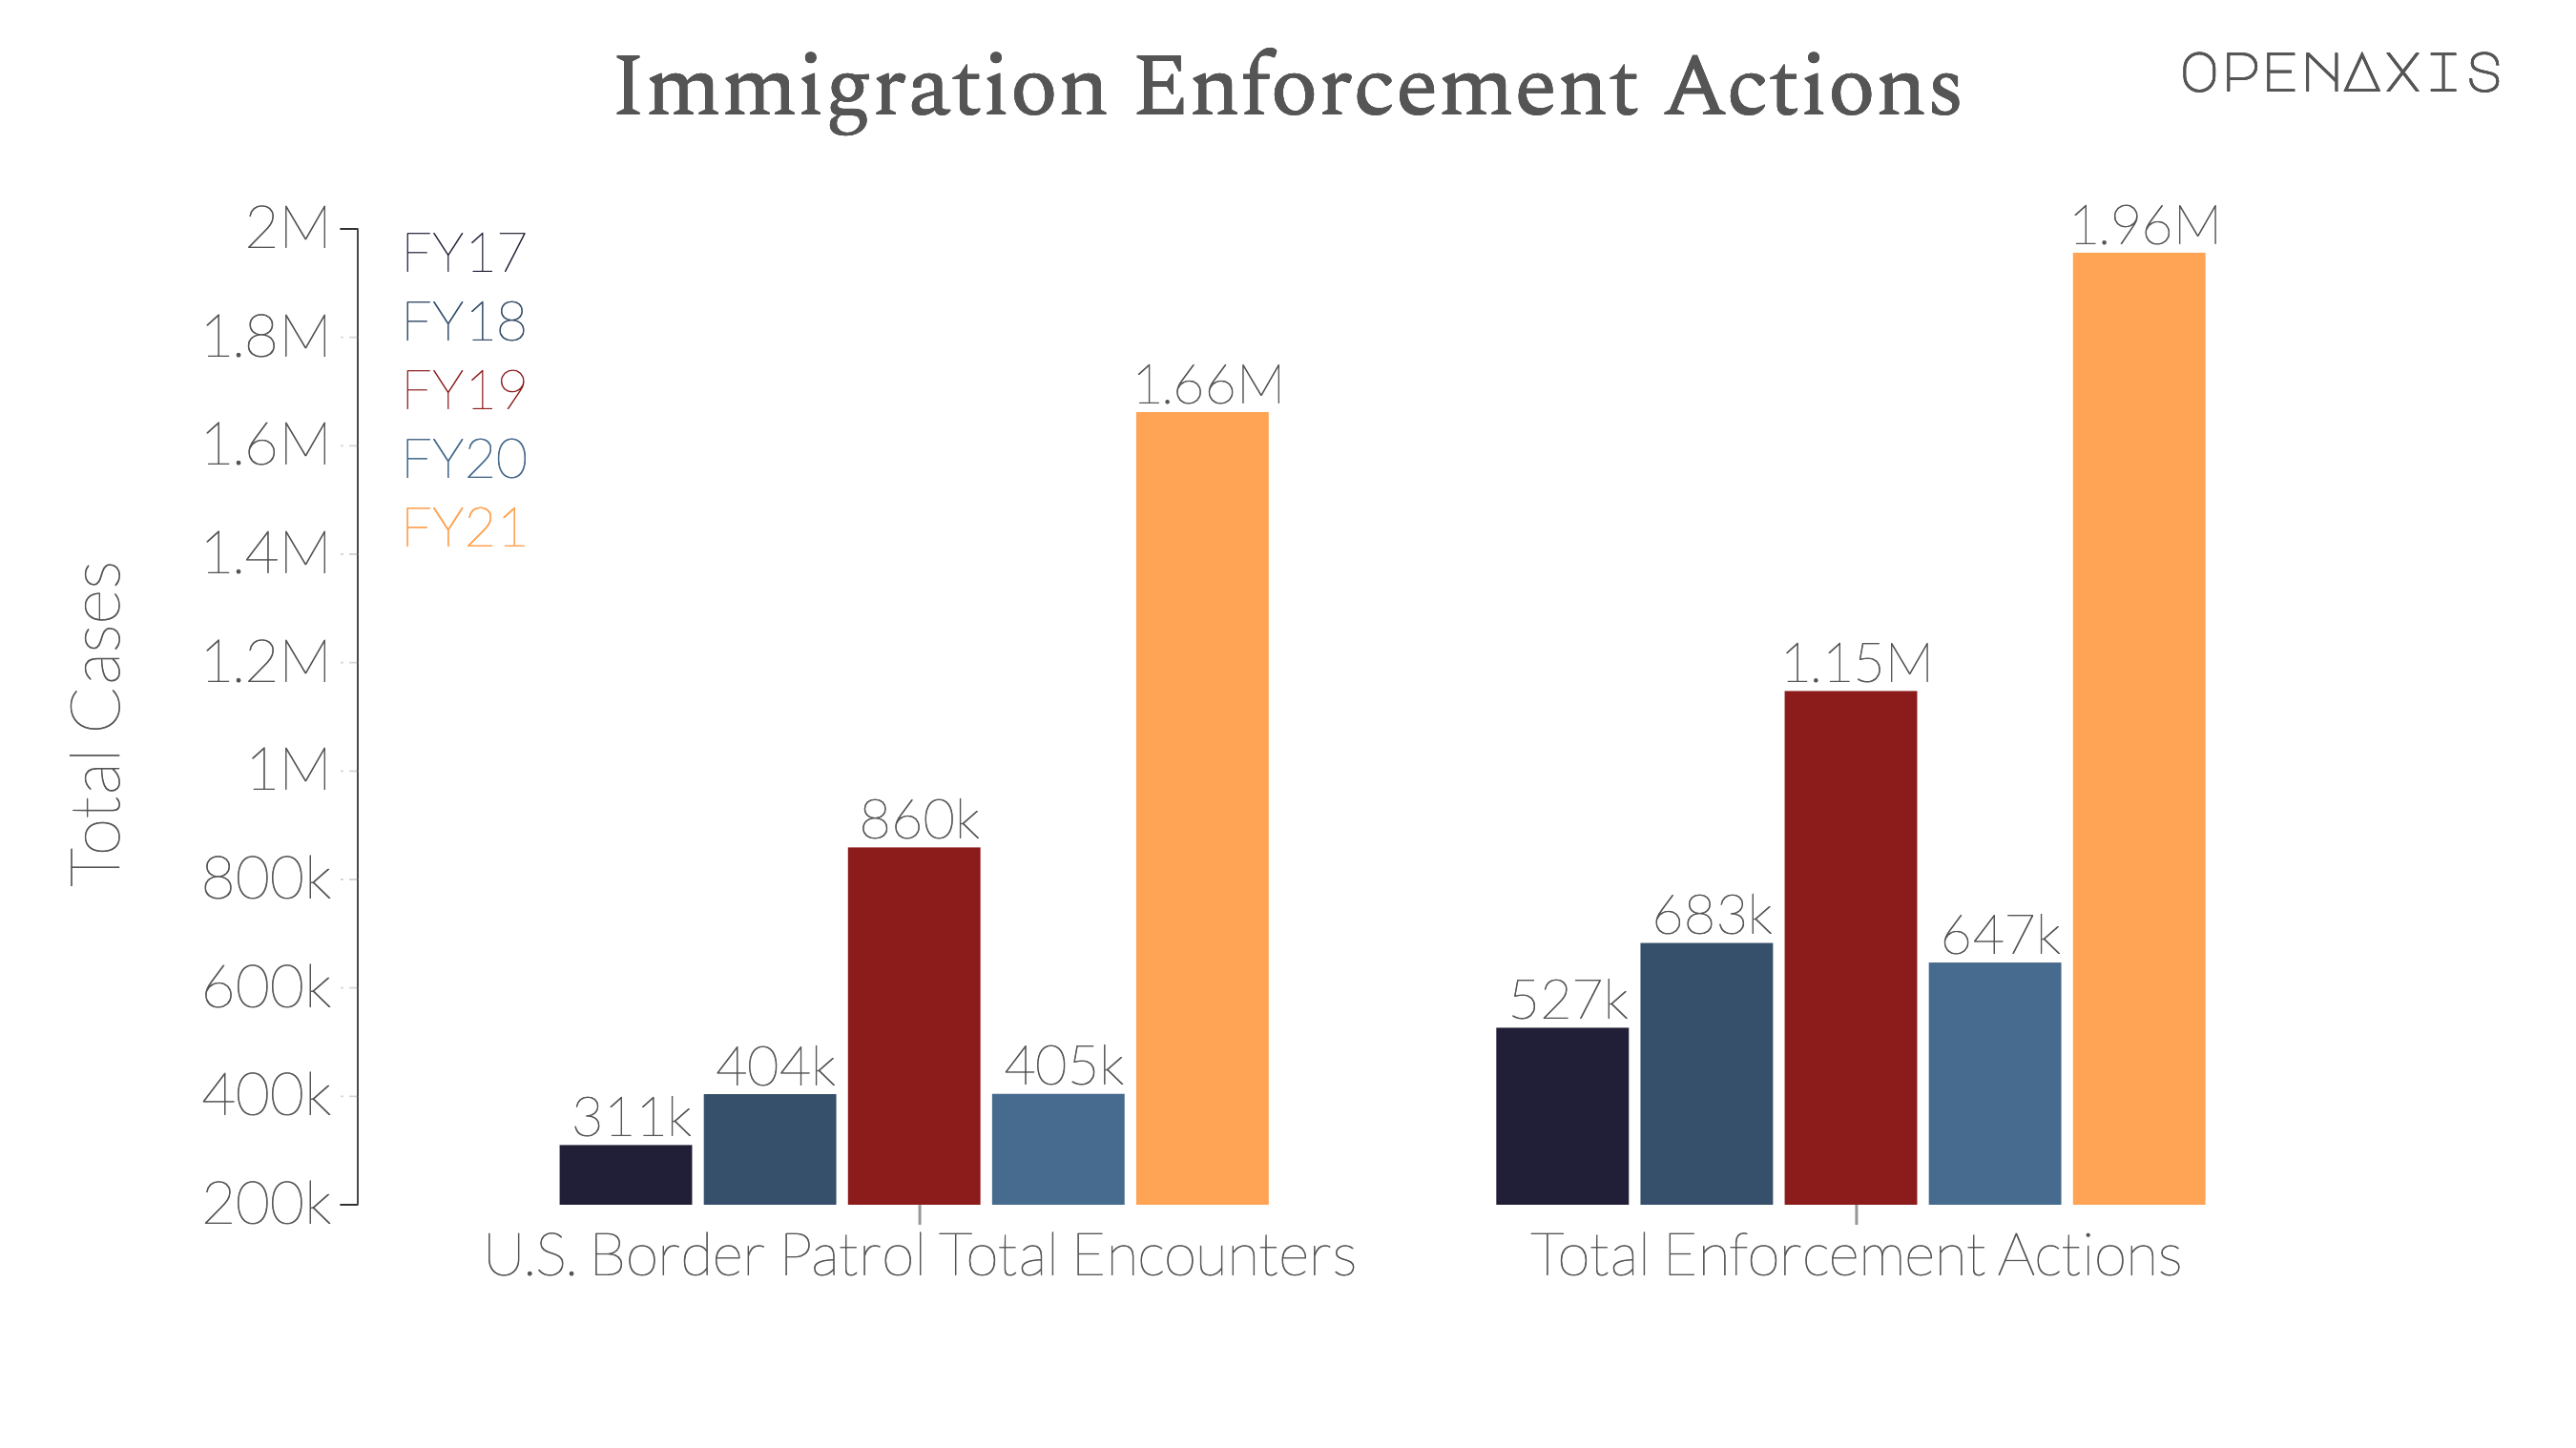 "Immigration Enforcement Actions"